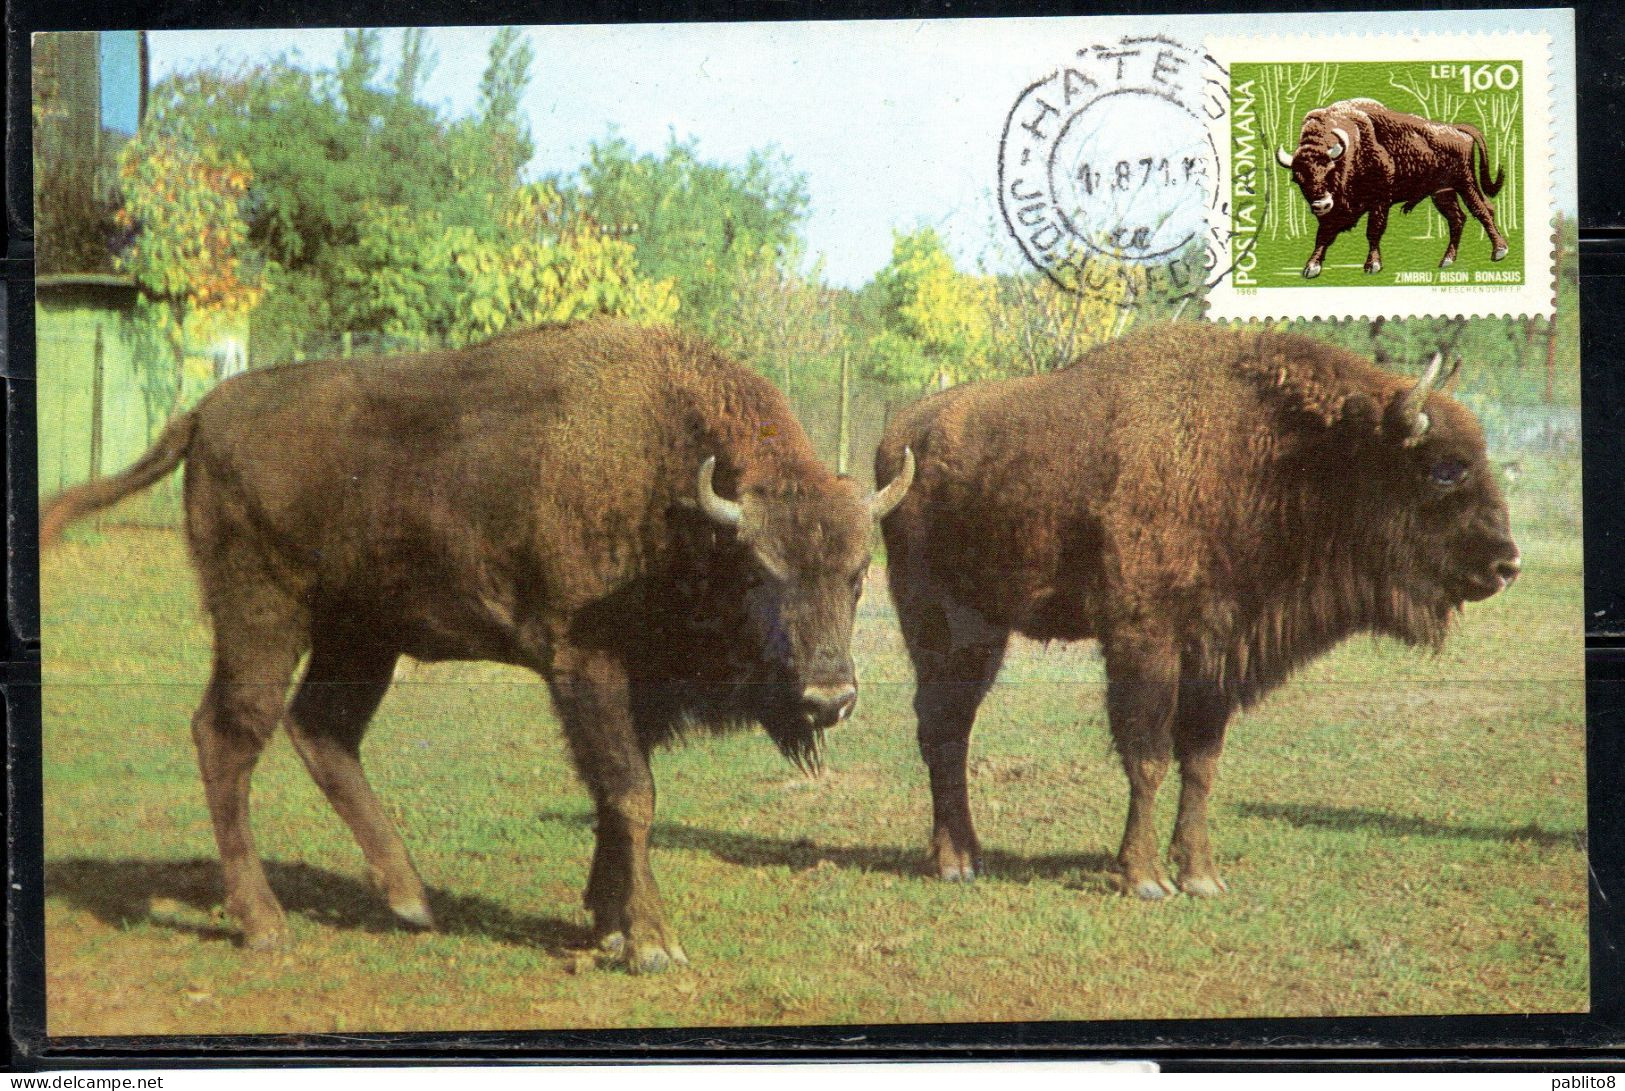 ROMANIA 1968 THE EUROPEAN BISON BONASUS ZIMBRU BISONTE NATURAL PARK PROTECTED ANIMAL FAUNA 1.60L MAXI MAXIMUM CARD - Cartes-maximum (CM)